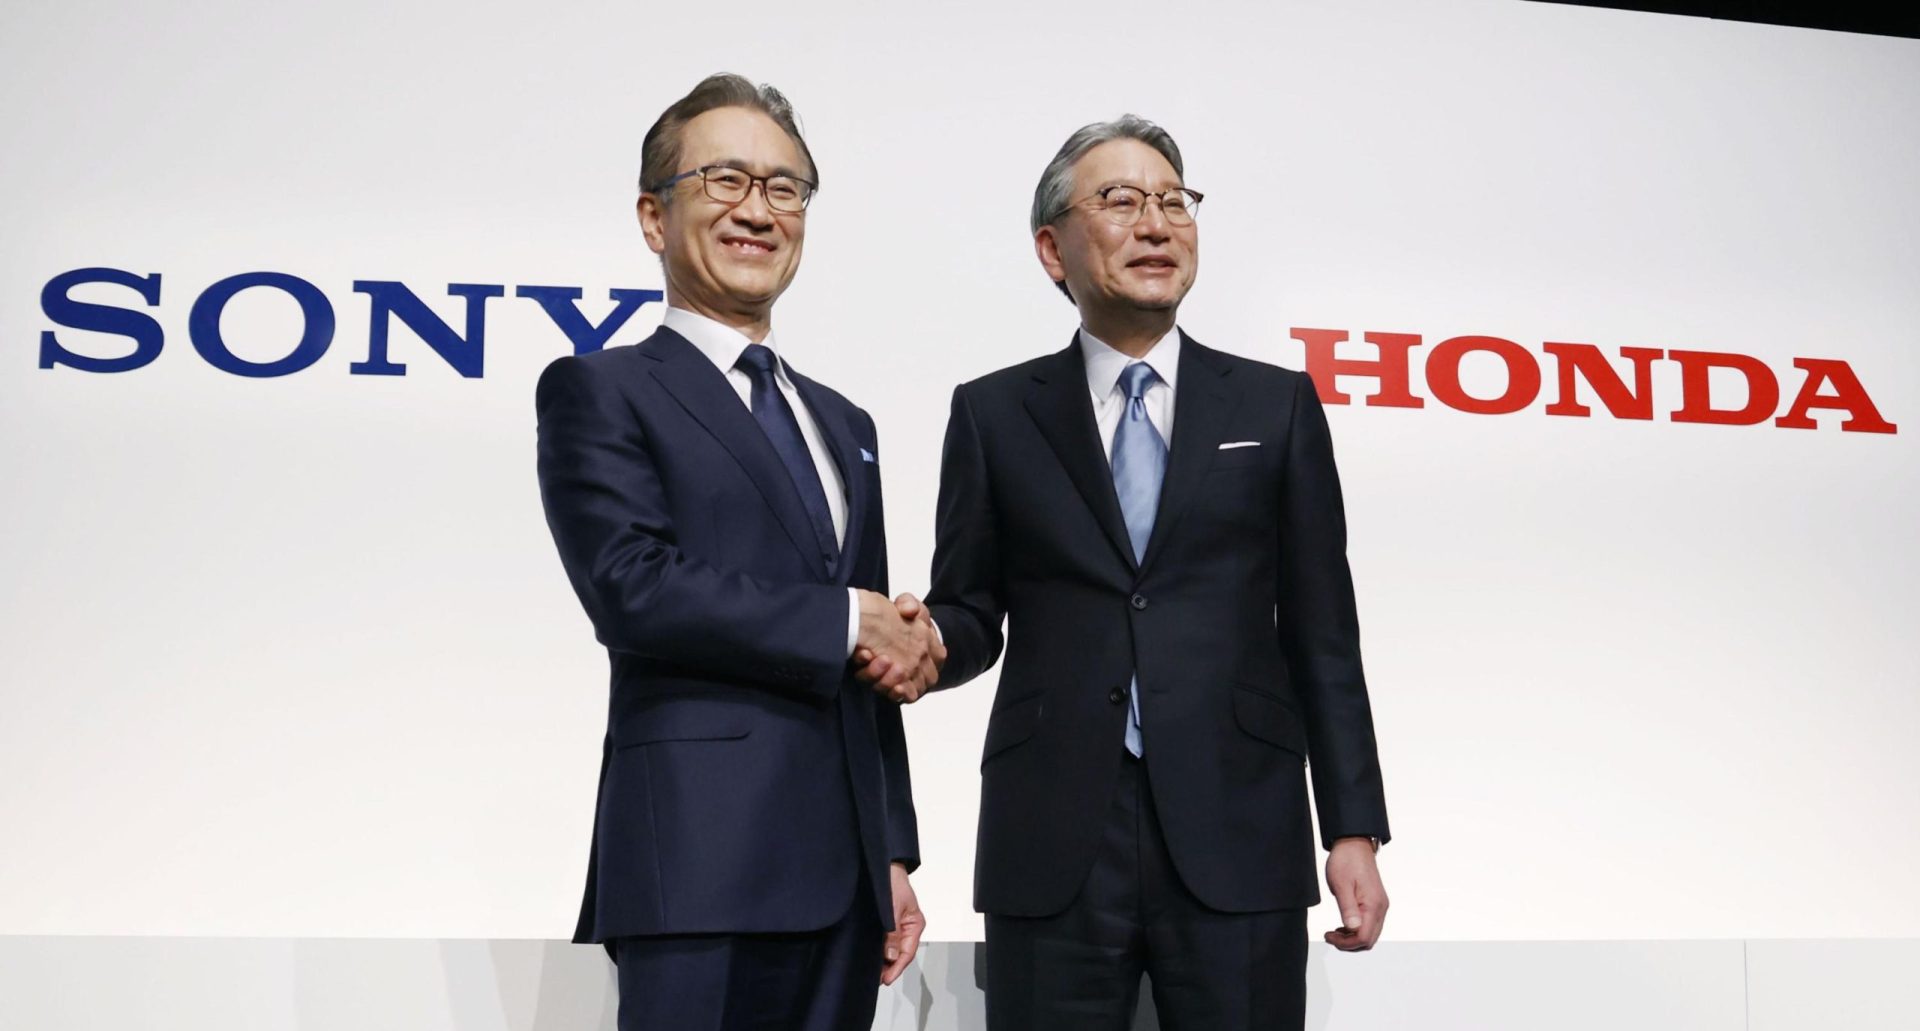 La japonesa Honda y Sony se unen en un nuevo vehículo eléctrico